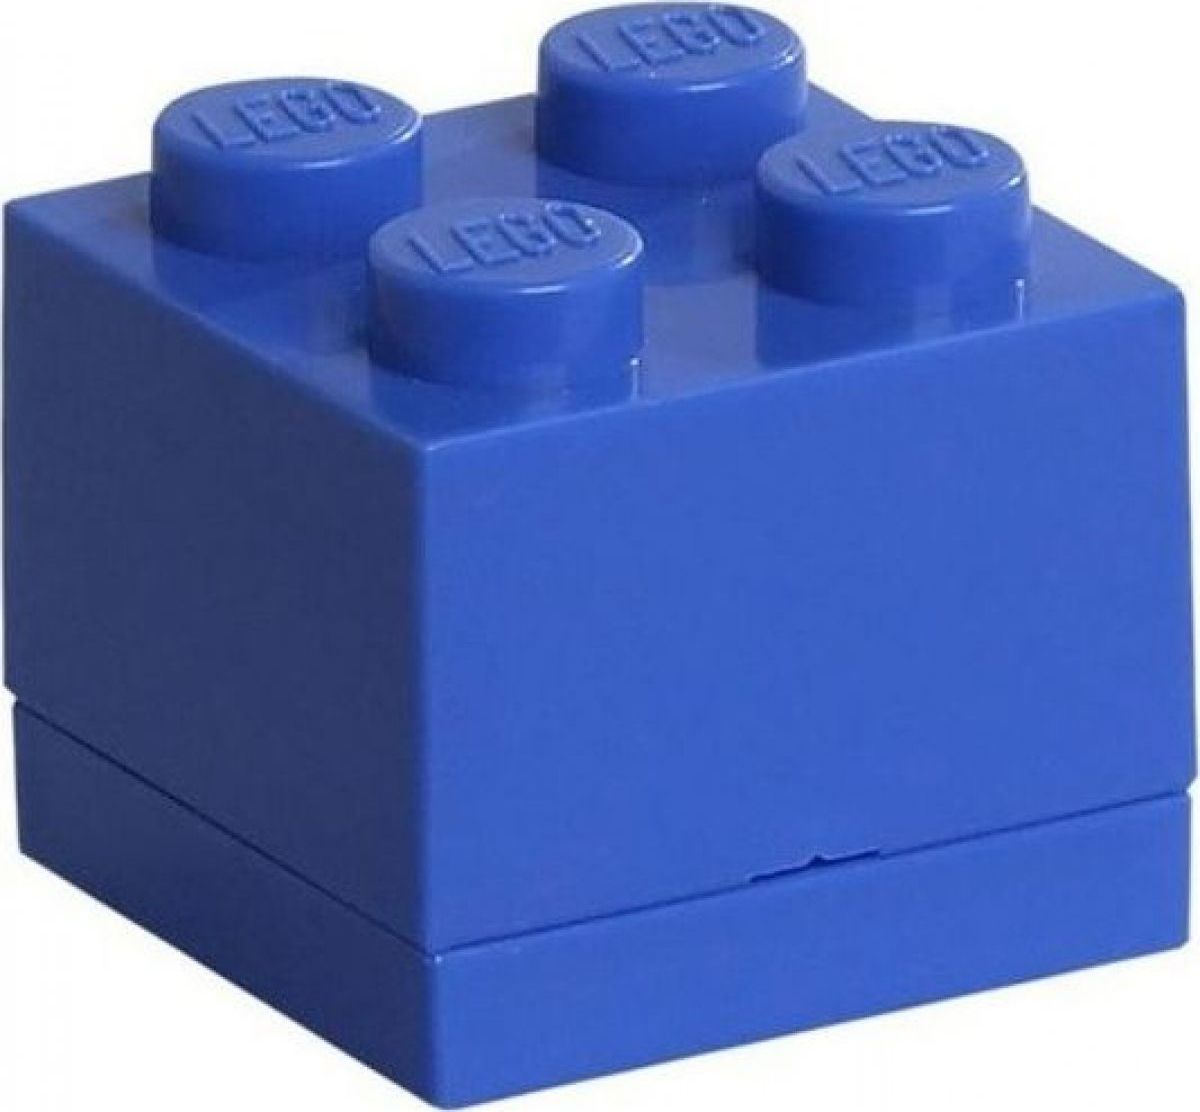 LEGO Mini Box 4,6 x 4,6 x 4,3 cm Modrá - obrázek 1